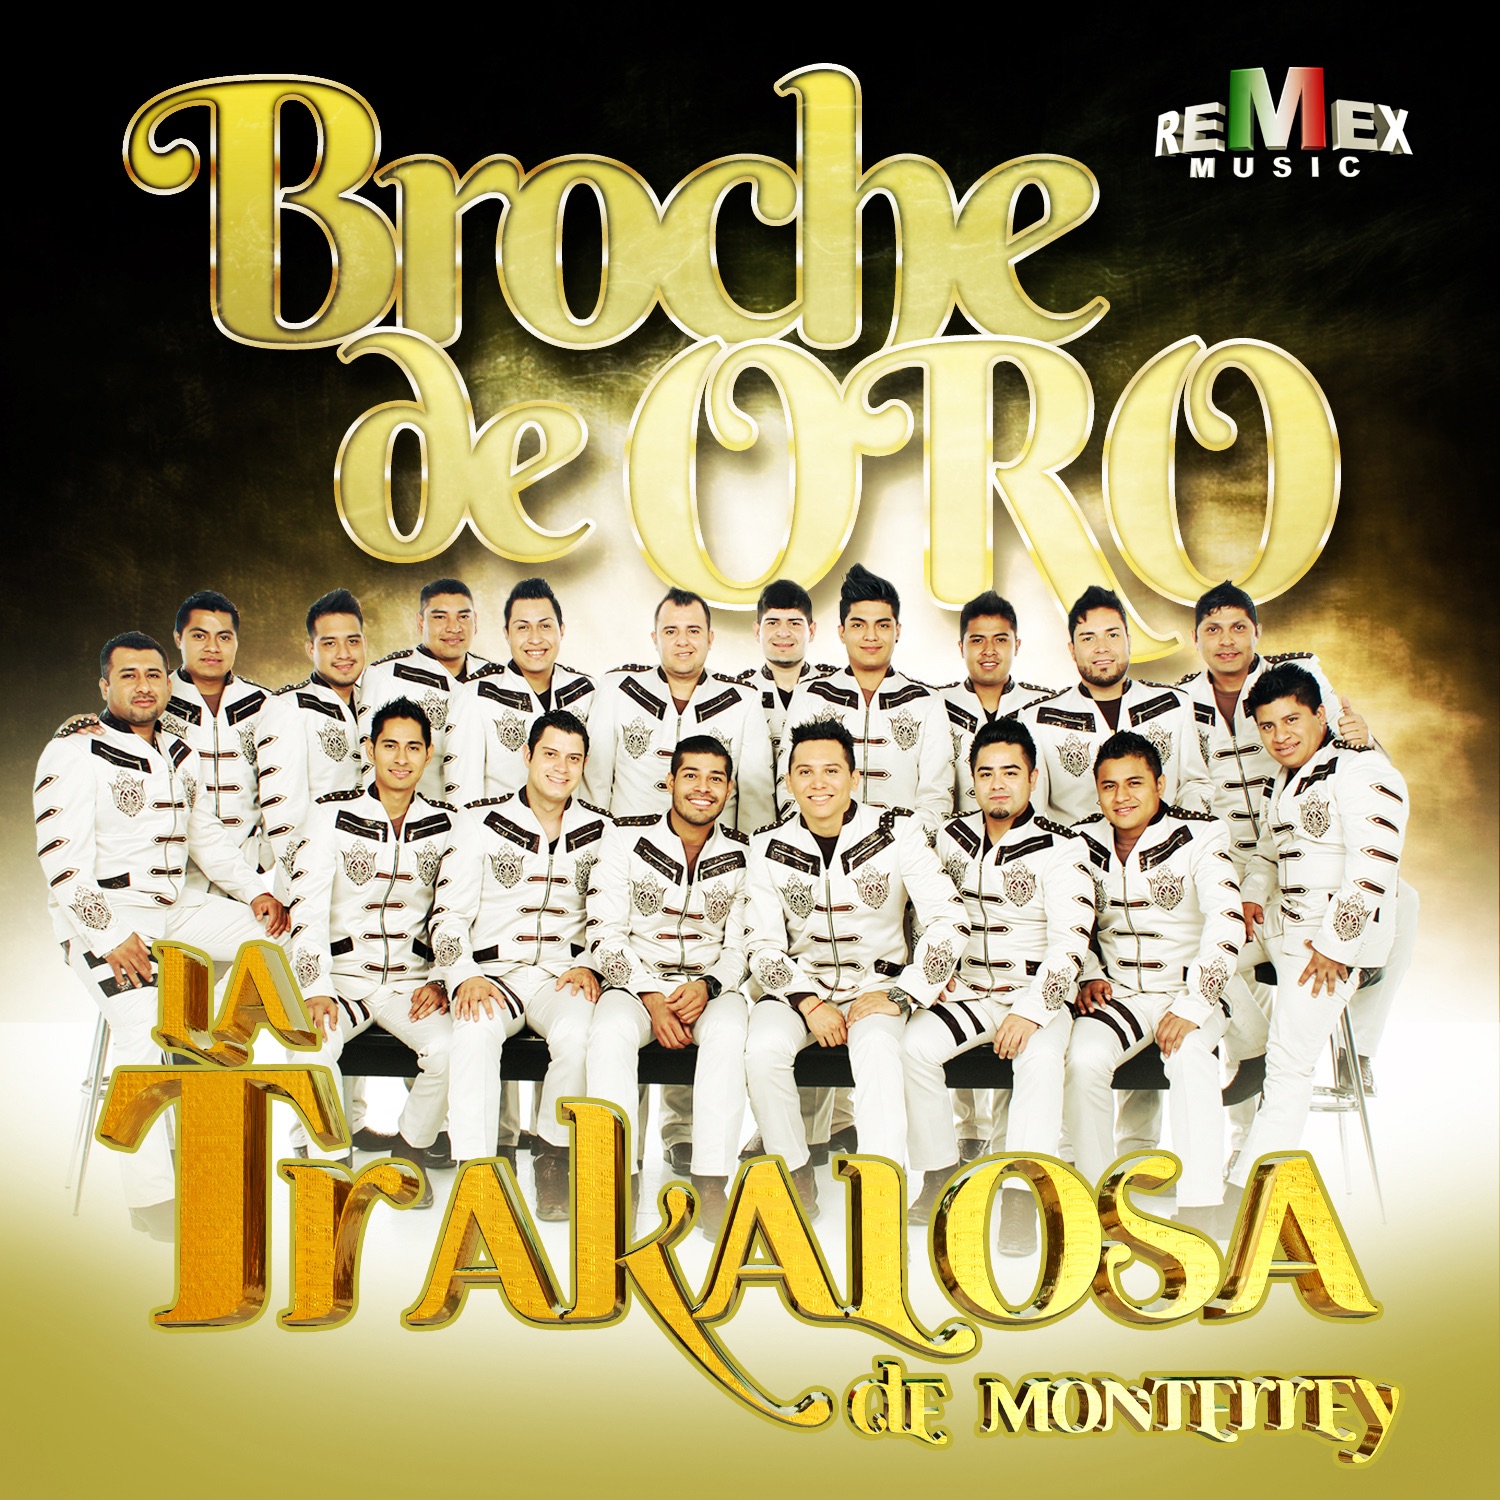 Broche de Oro - Single de La Trakalosa de Monterrey en iTunes